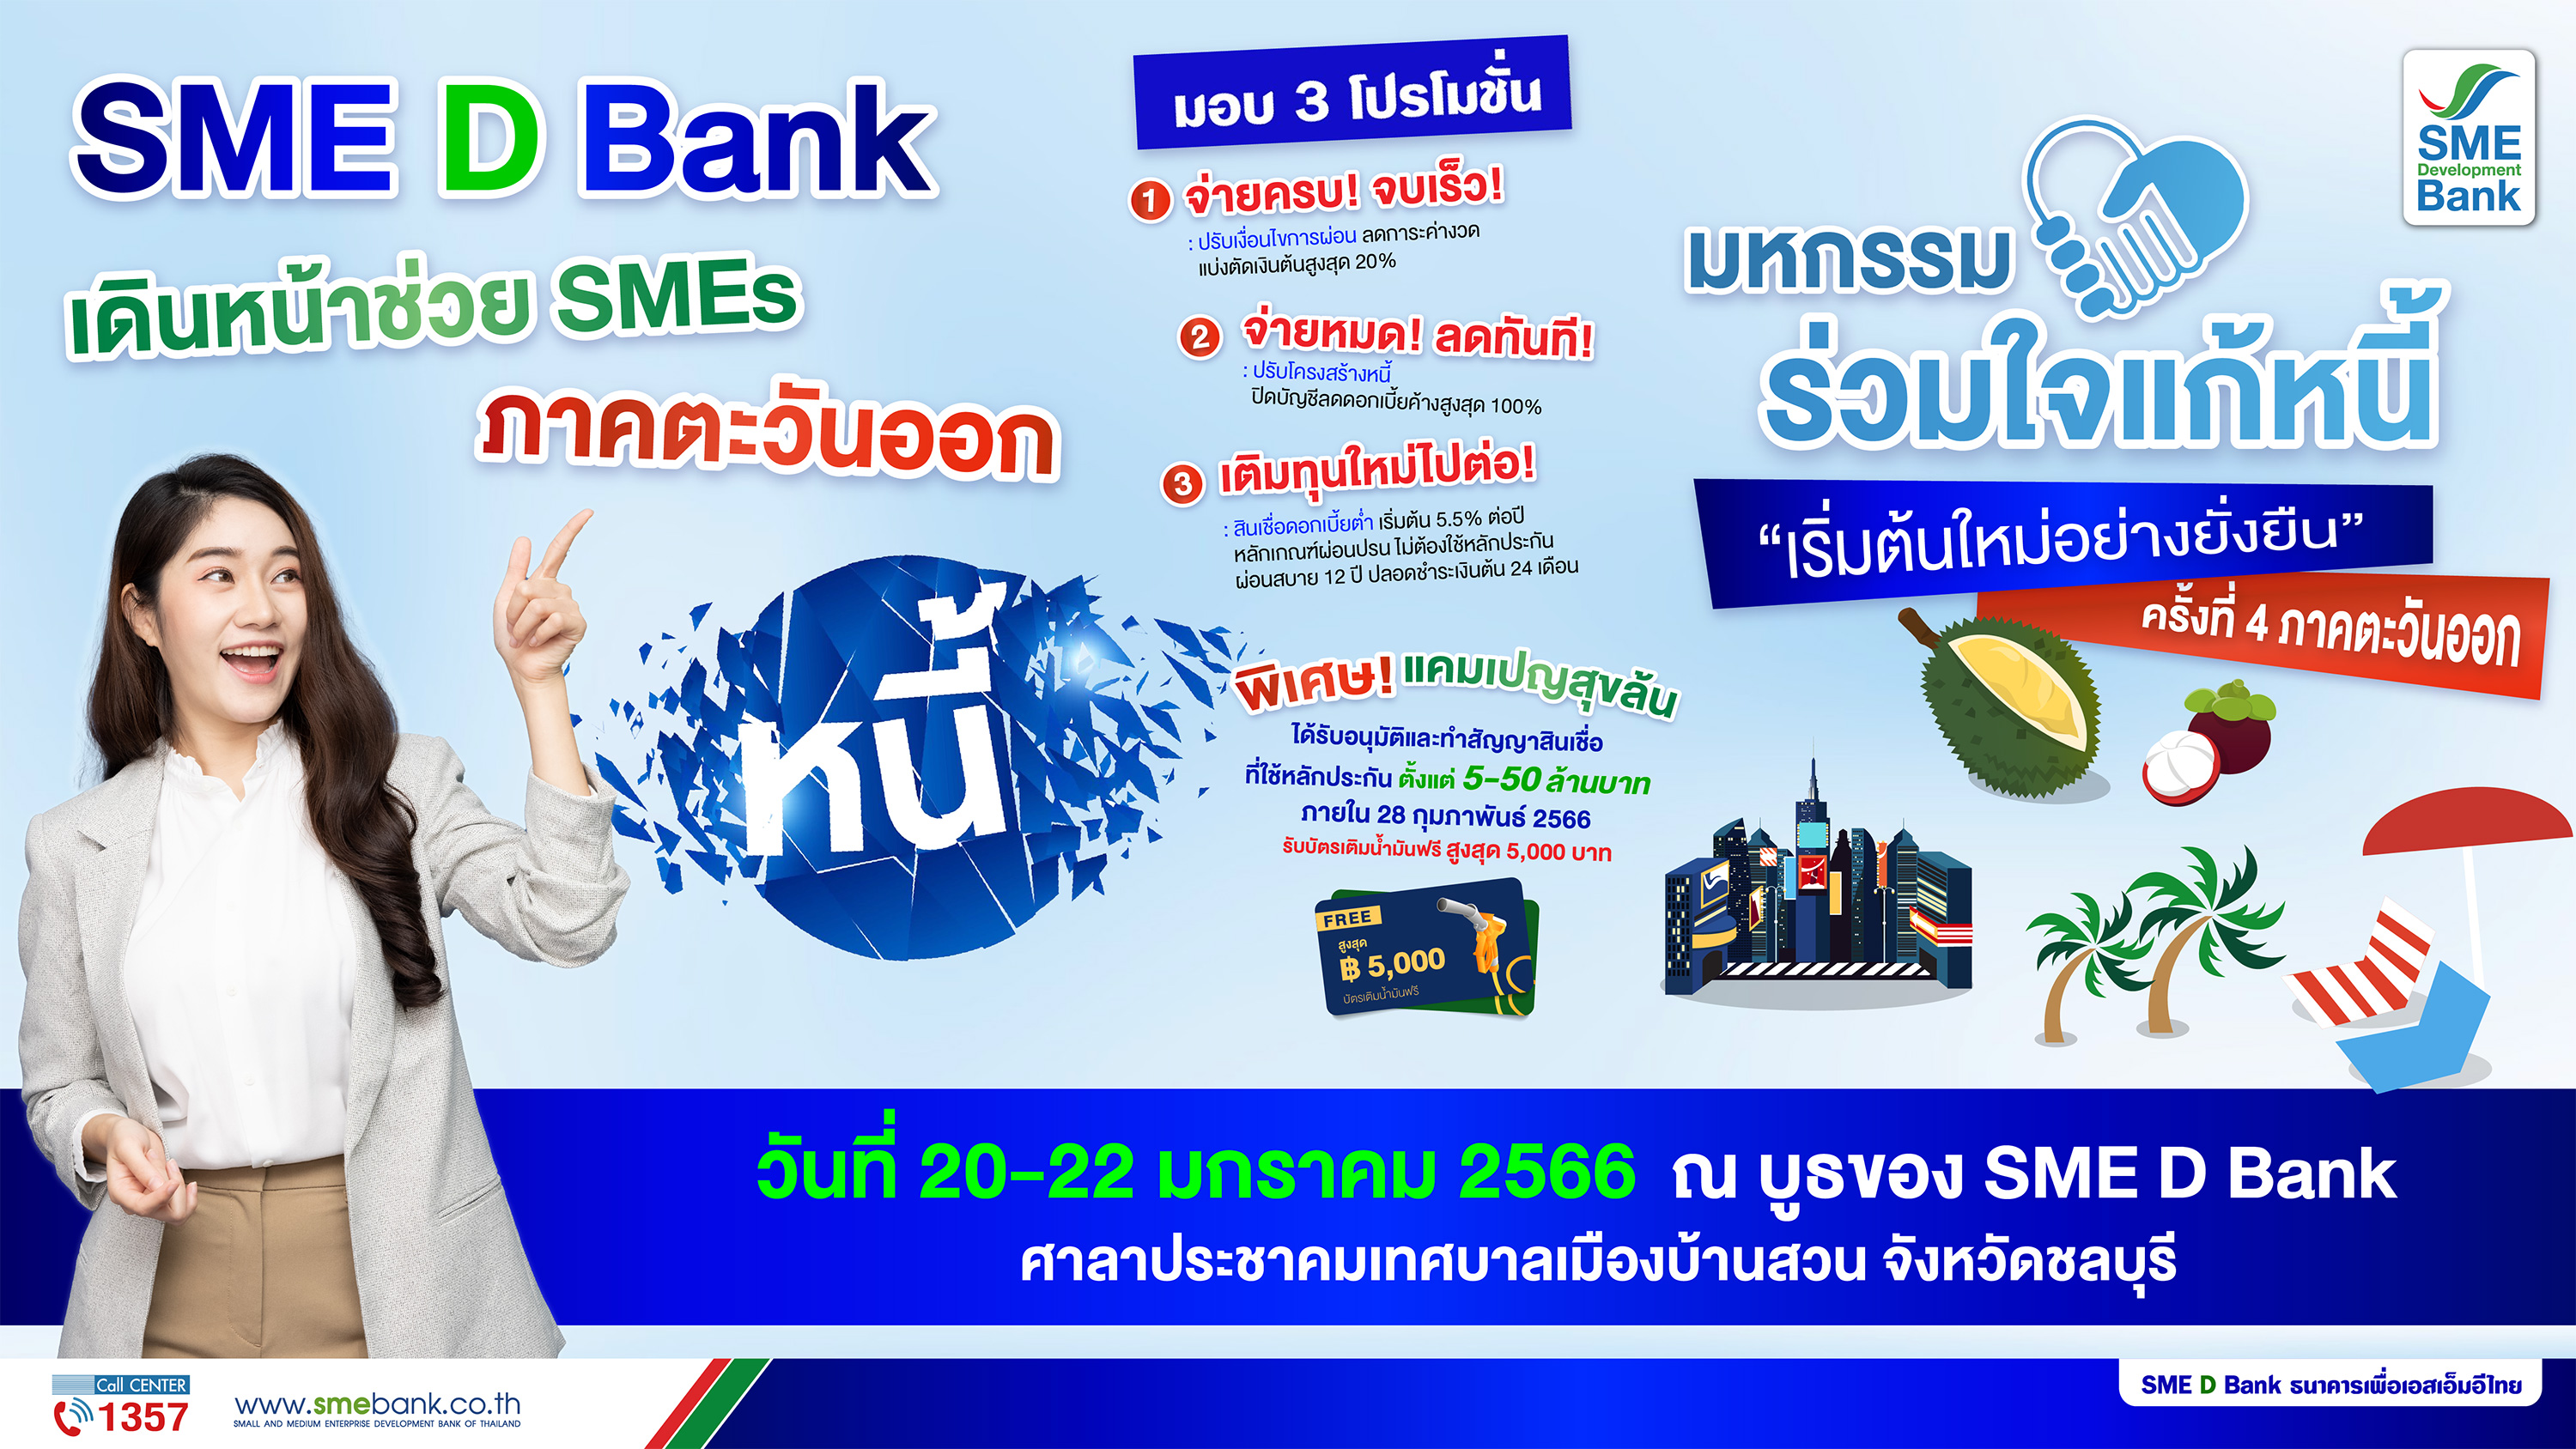 SME D Bank จัดเต็มร่วมงาน ‘มหกรรมร่วมใจแก้หนี้ฯ’ ครั้งที่ 4 จ.ชลบุรี มอบโปรโมชั่นช่วยครบจบในที่เดียว เติมทุนแถมฟรีบัตรเติมน้ำมัน 5,000 บาท